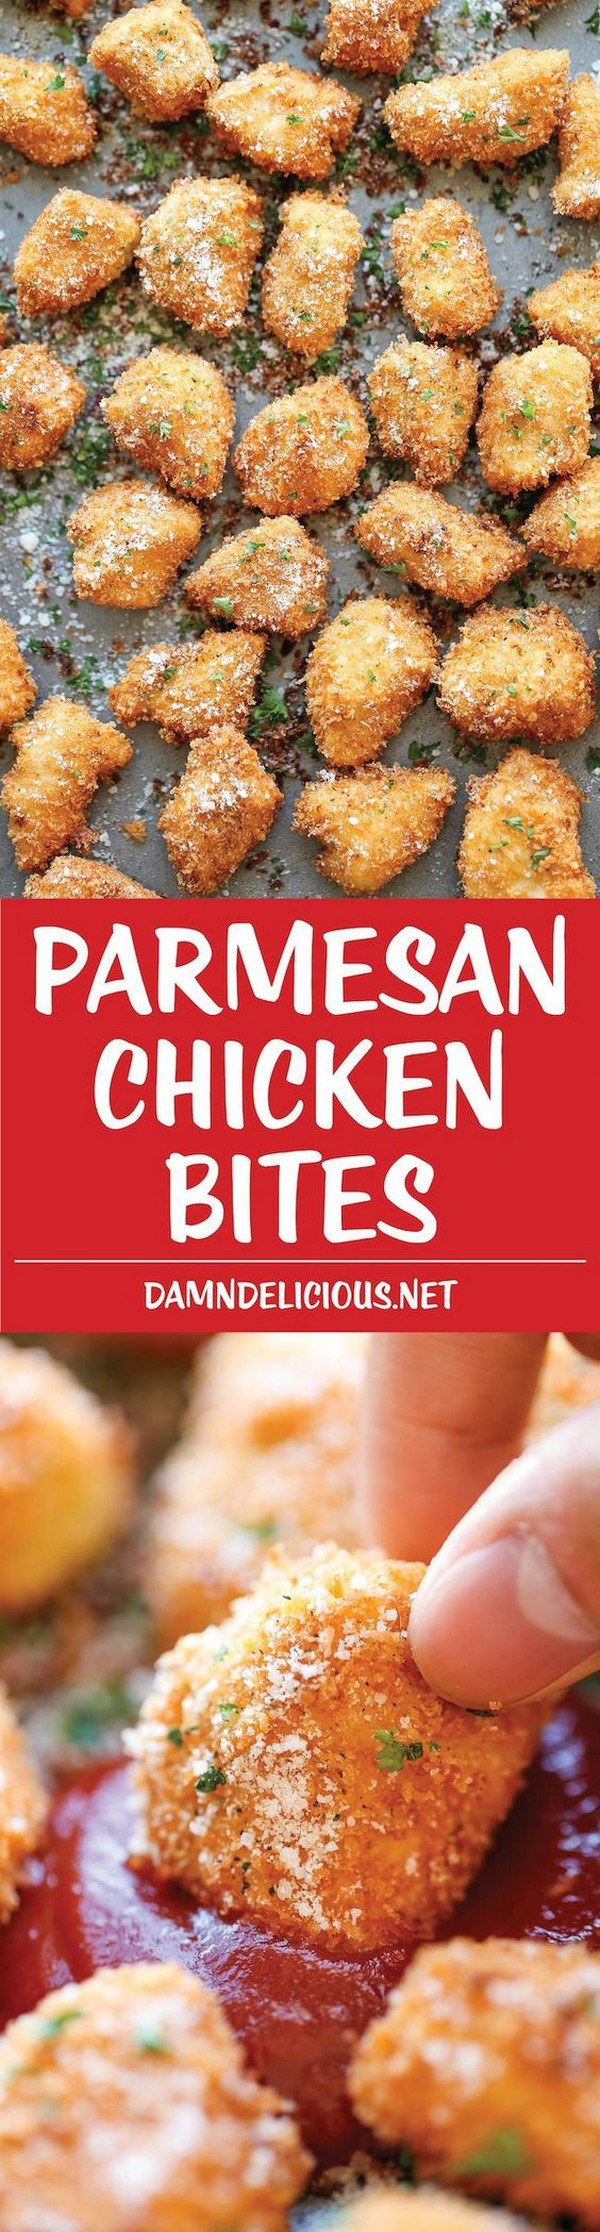 Parmesan Chicken Bites